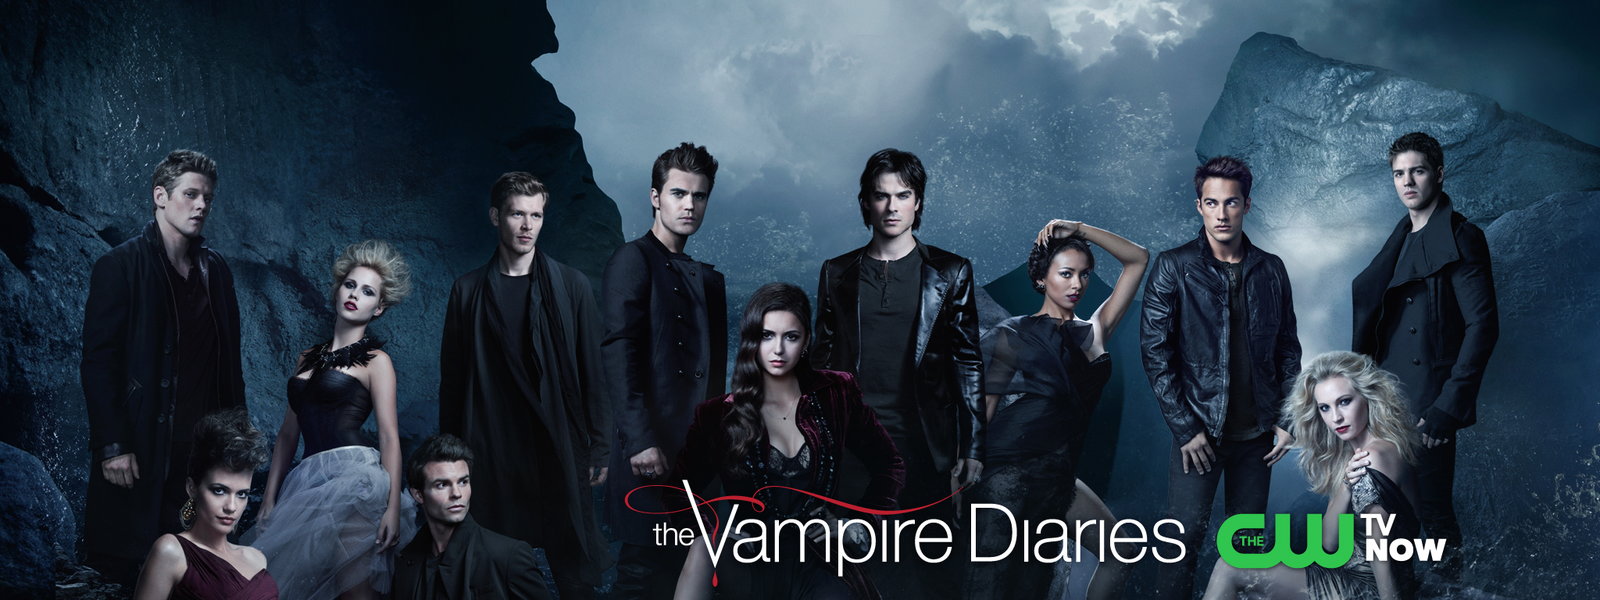 [49+] Vampire Diaries Cast Wallpapers | WallpaperSafari